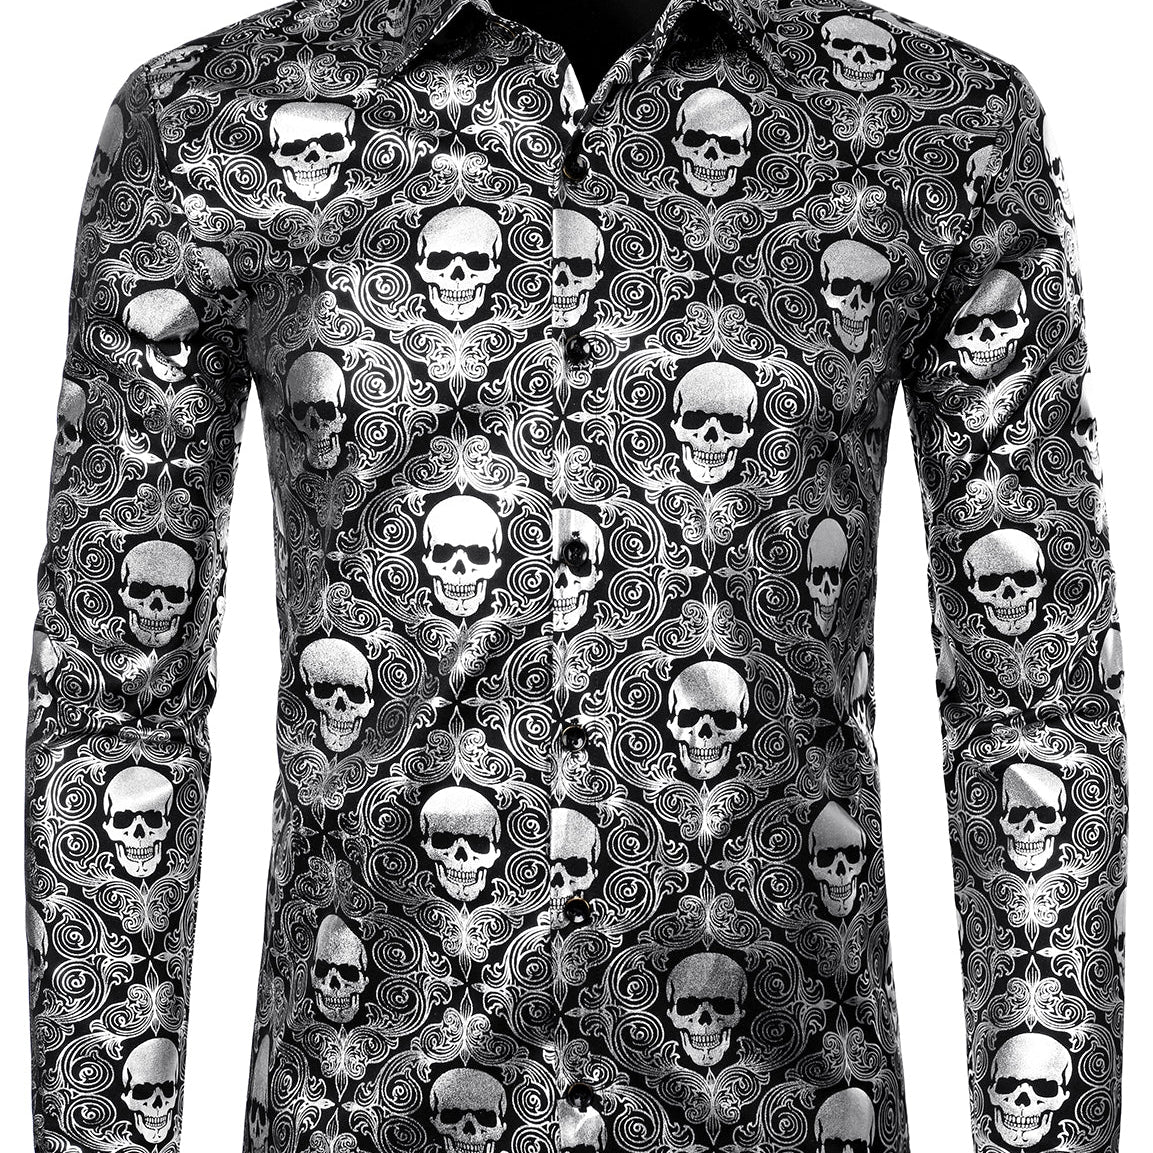 Men's Luxury Skull Design Paisley Shirt